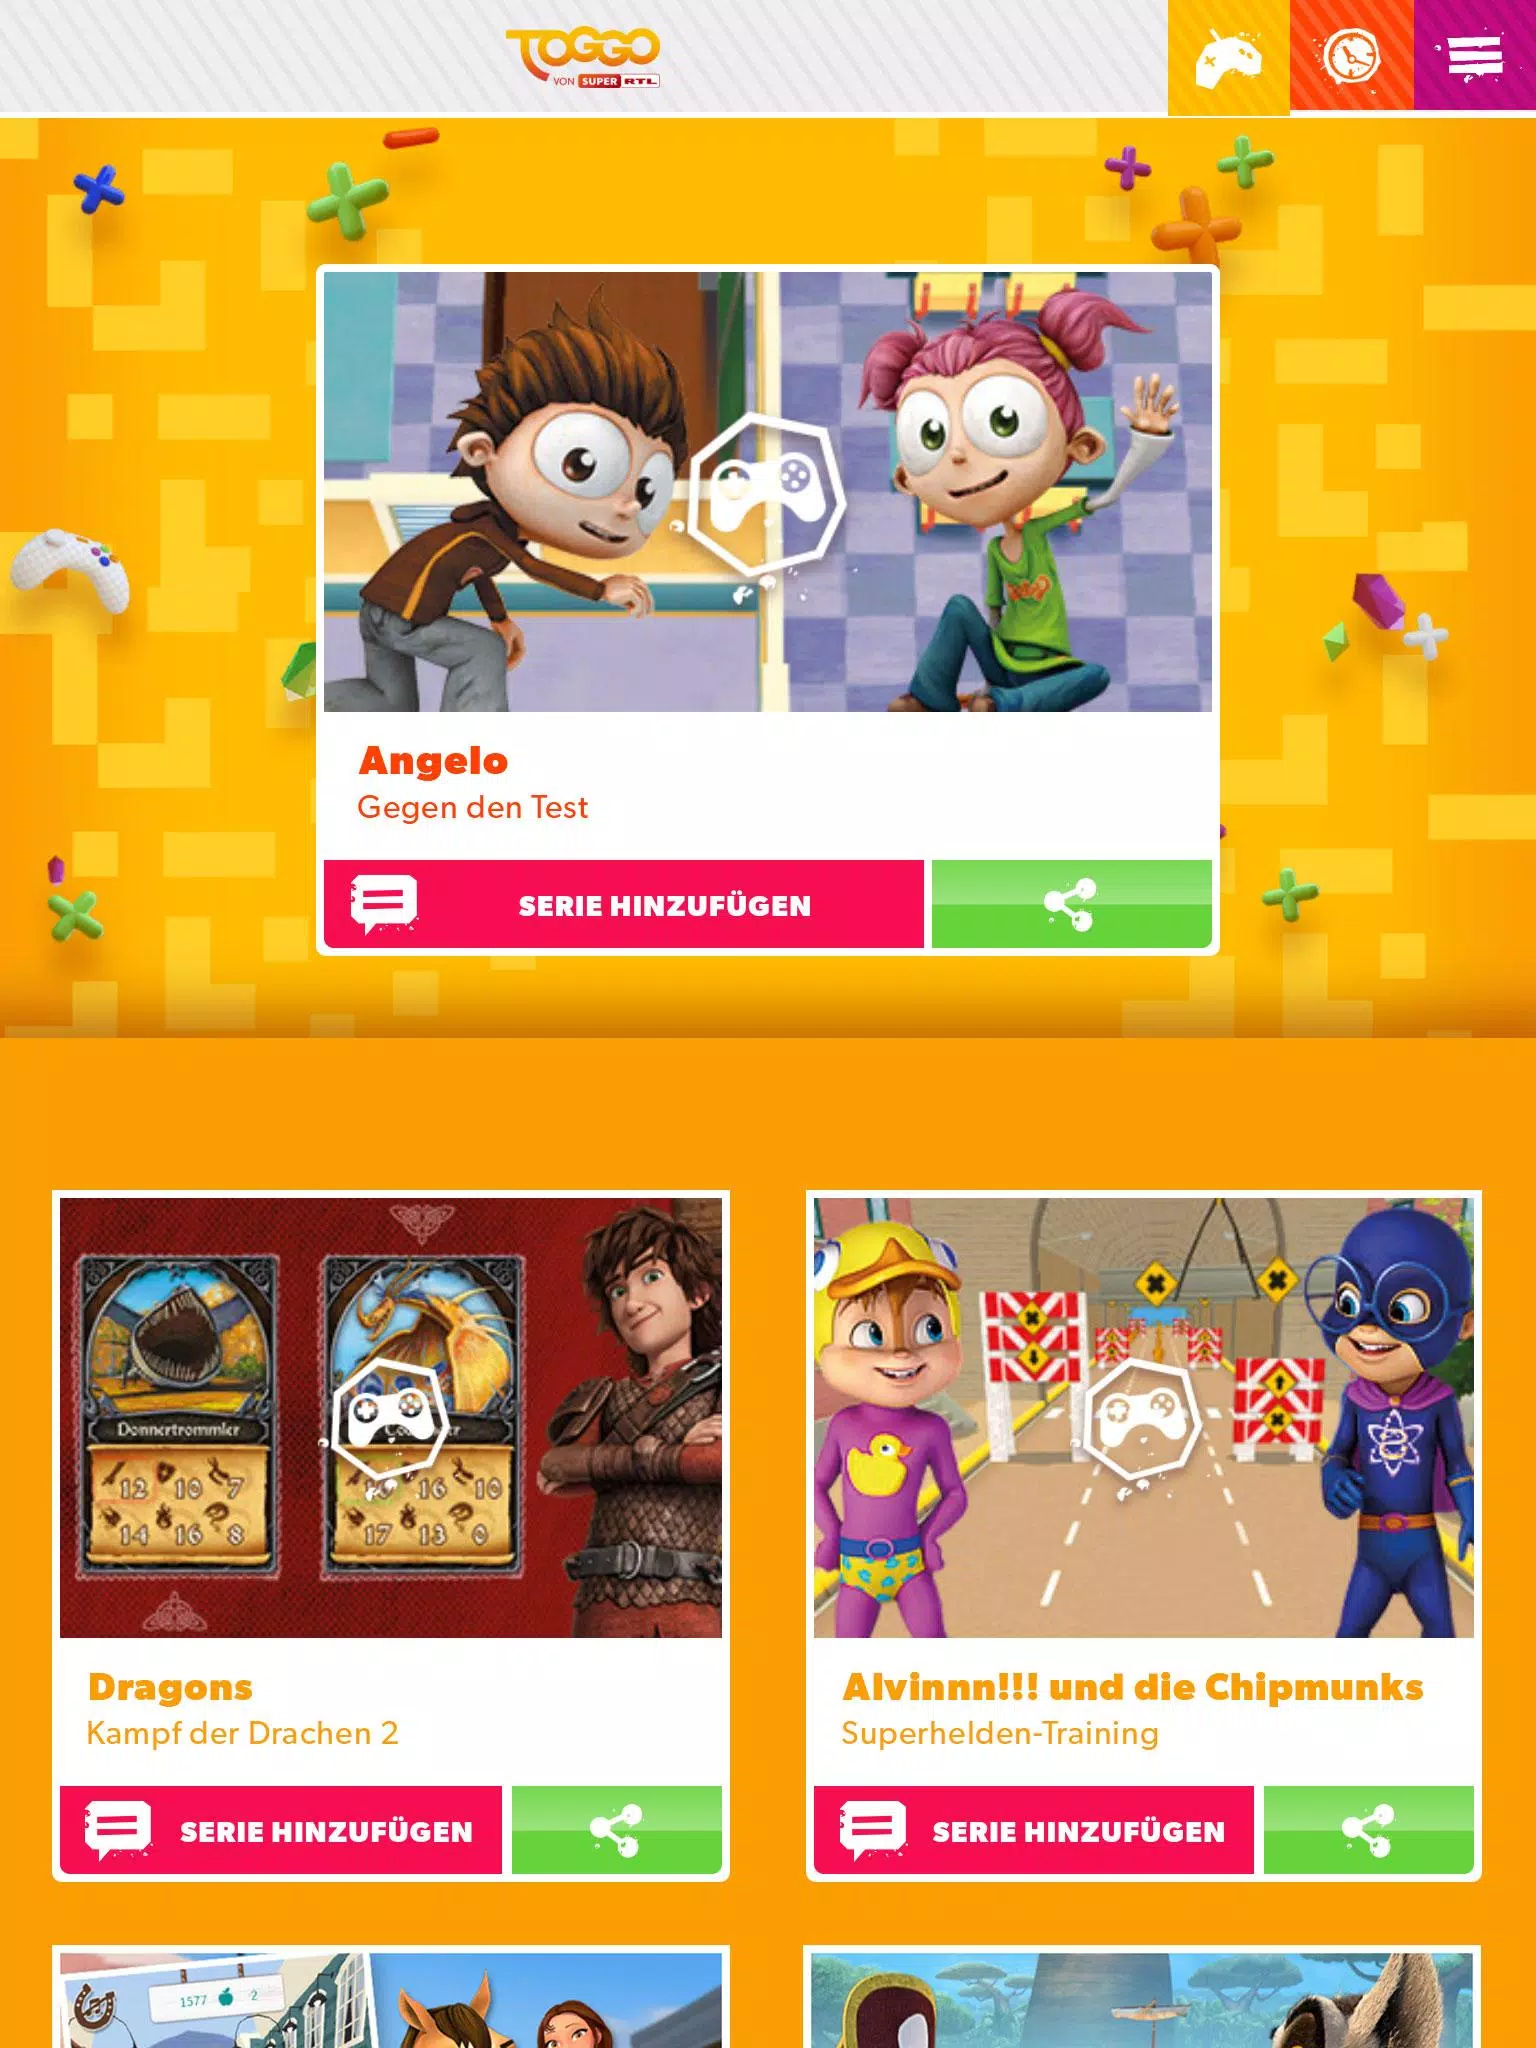 TOGGO Spiele pour Android - Téléchargez l'APK